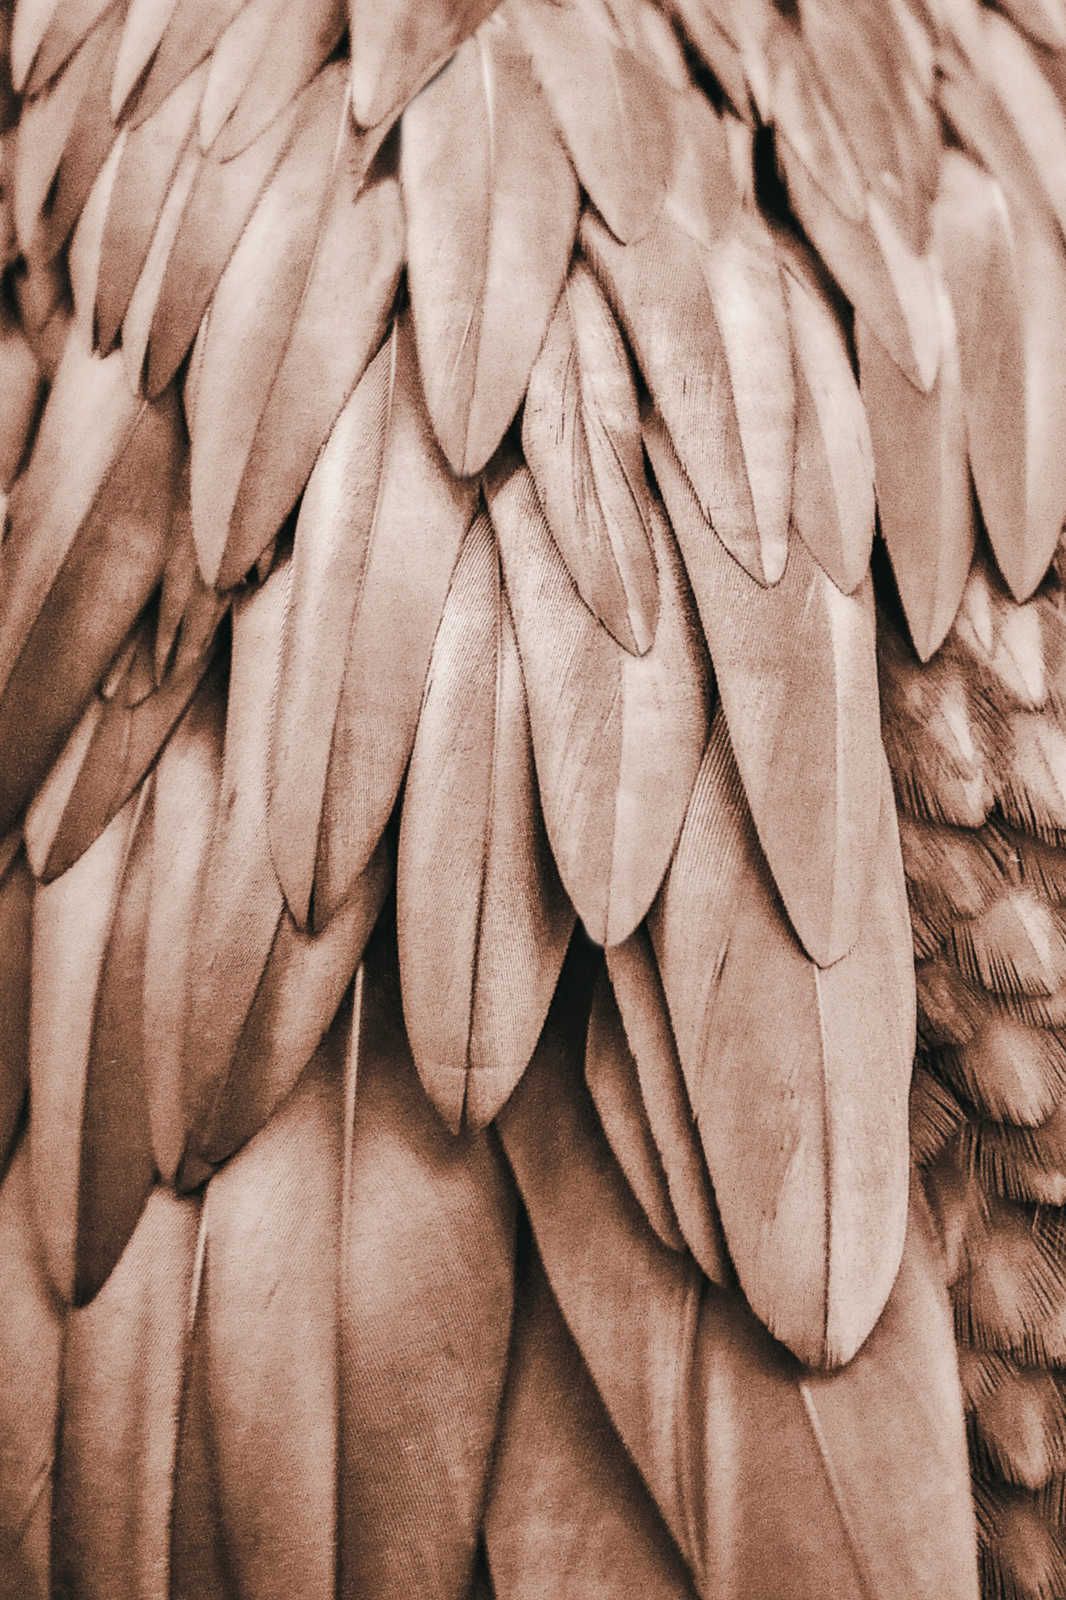             Cuadro Alas de pluma en marrón sepia - 0,90 m x 0,60 m
        